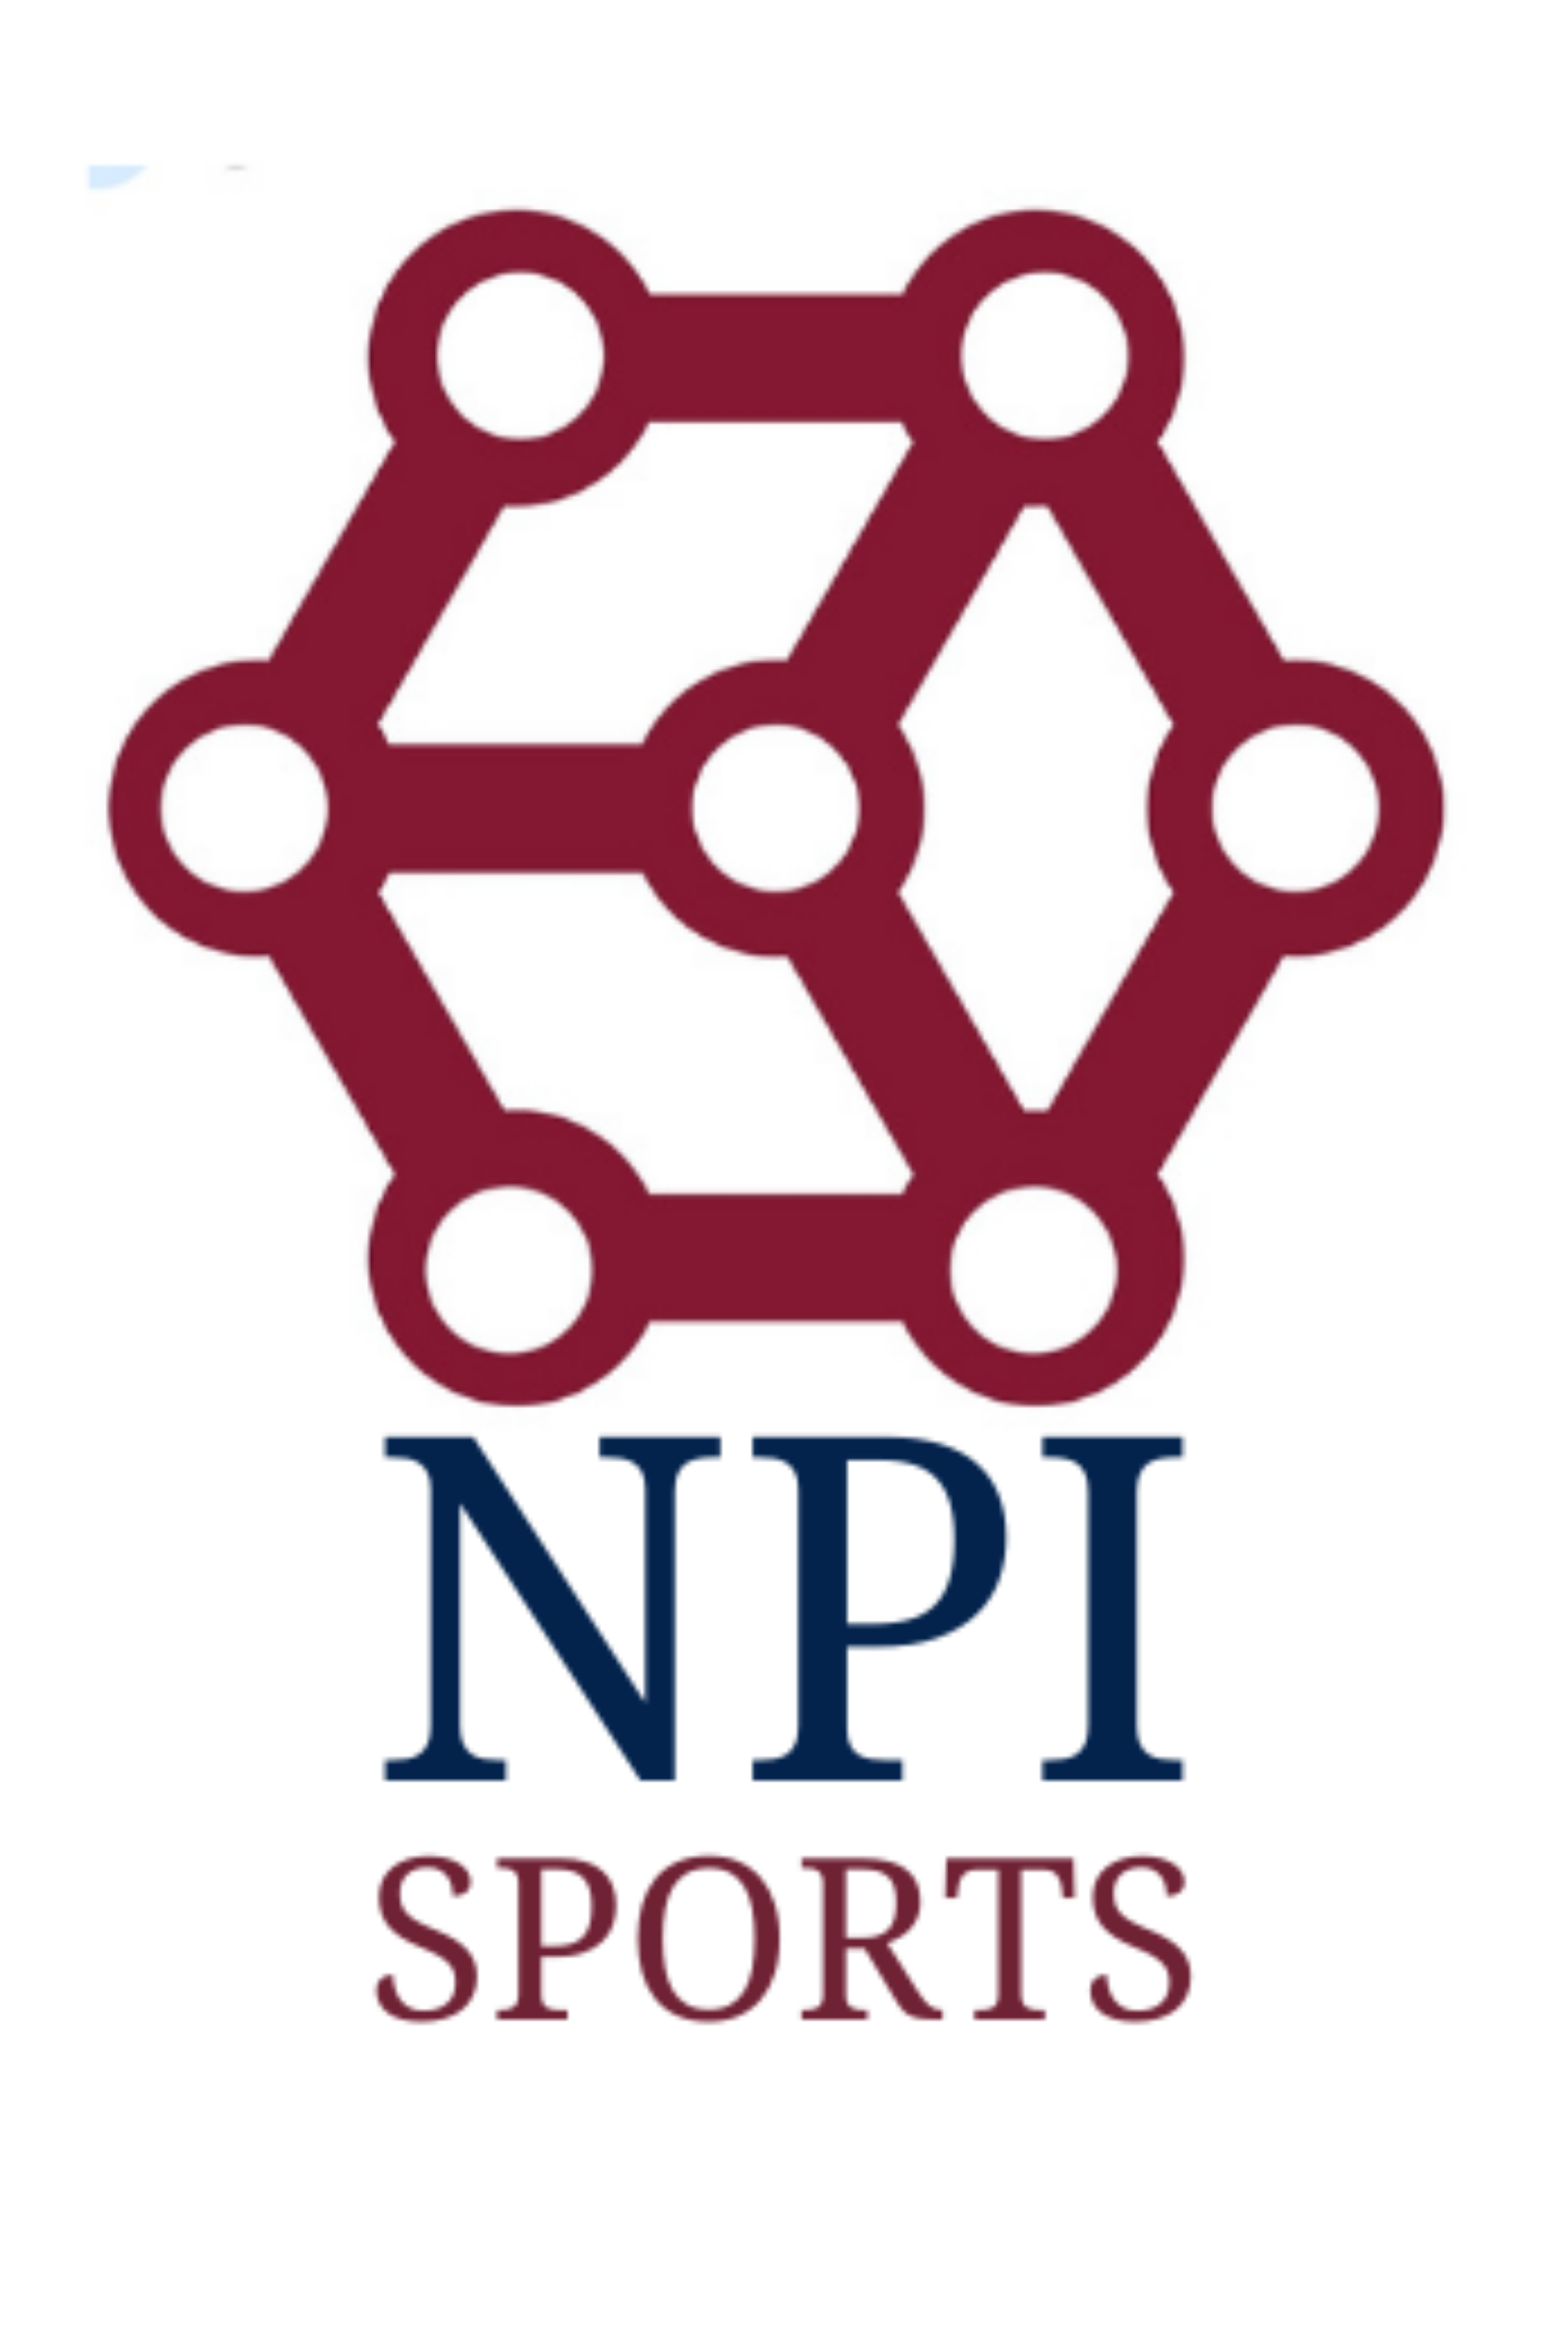 NPI Sports